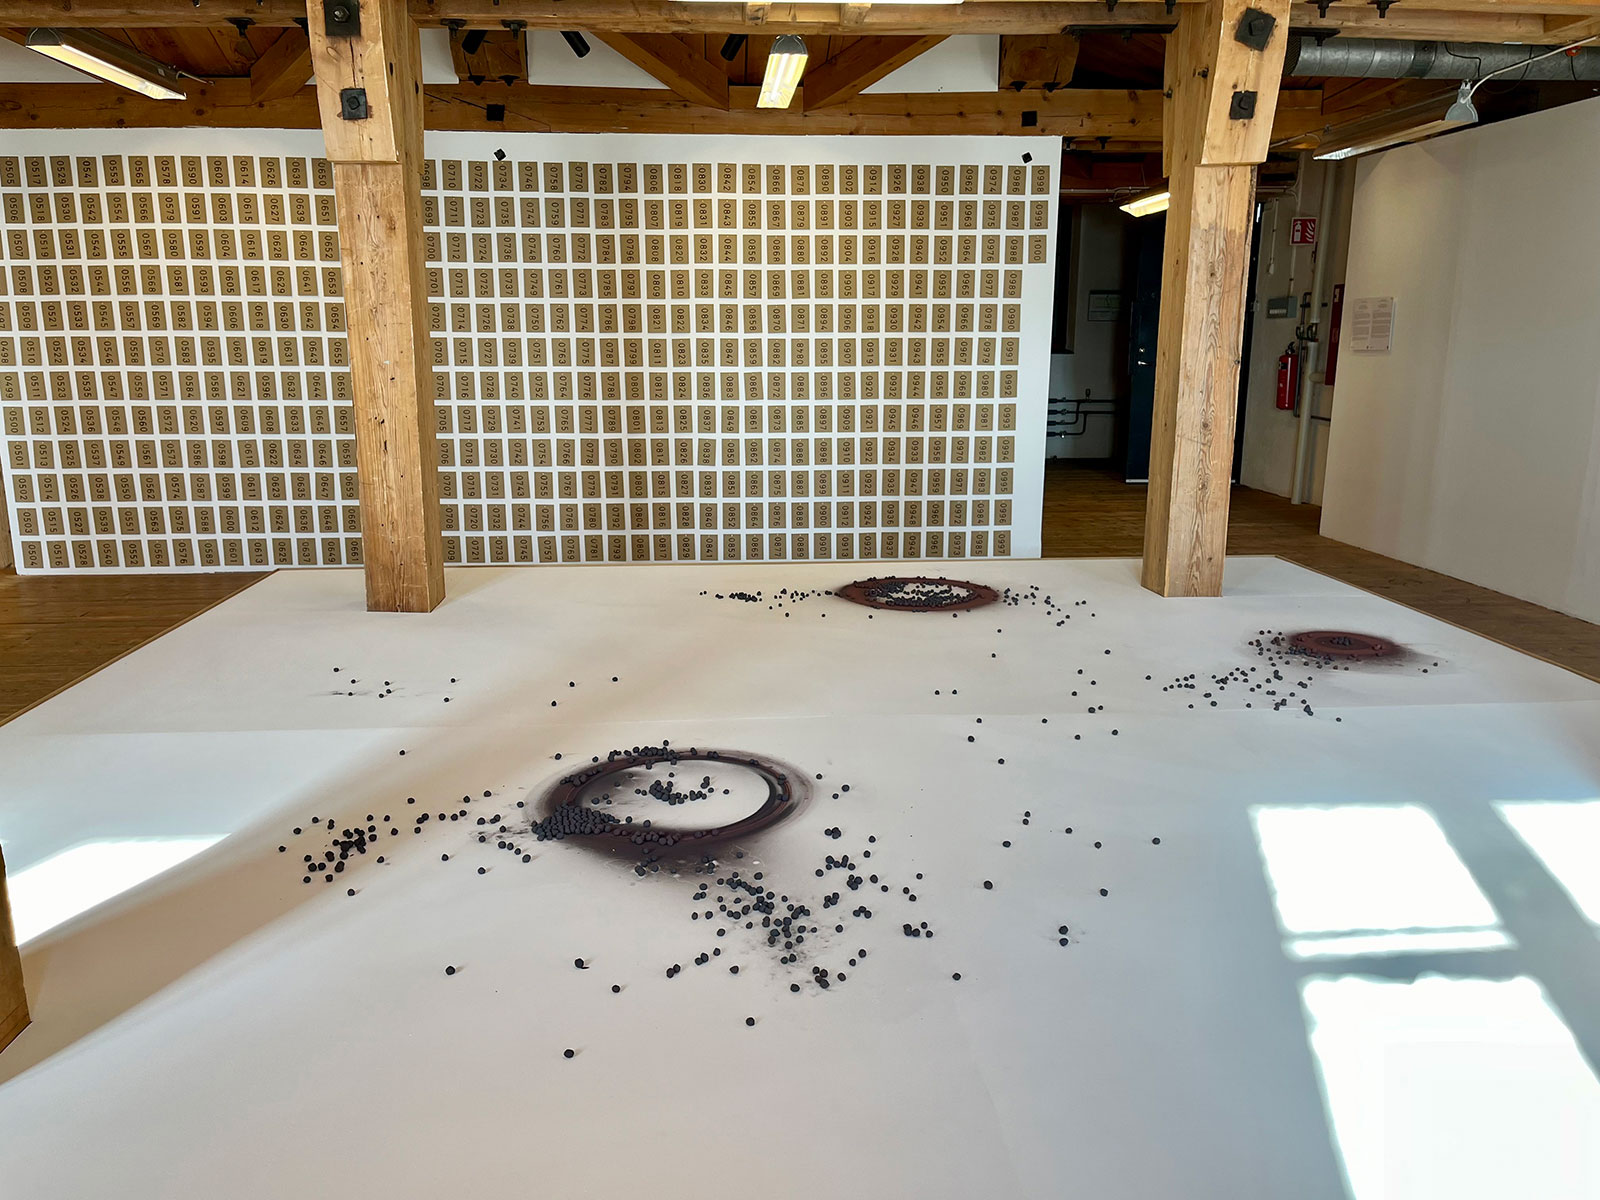 Foto: På det vita golvet ligger på och runt runda skivor små svarta pellets. I bakgrunden syns en vit vägg med rad efter rad med små bruna papperspåsar uppsatta. 